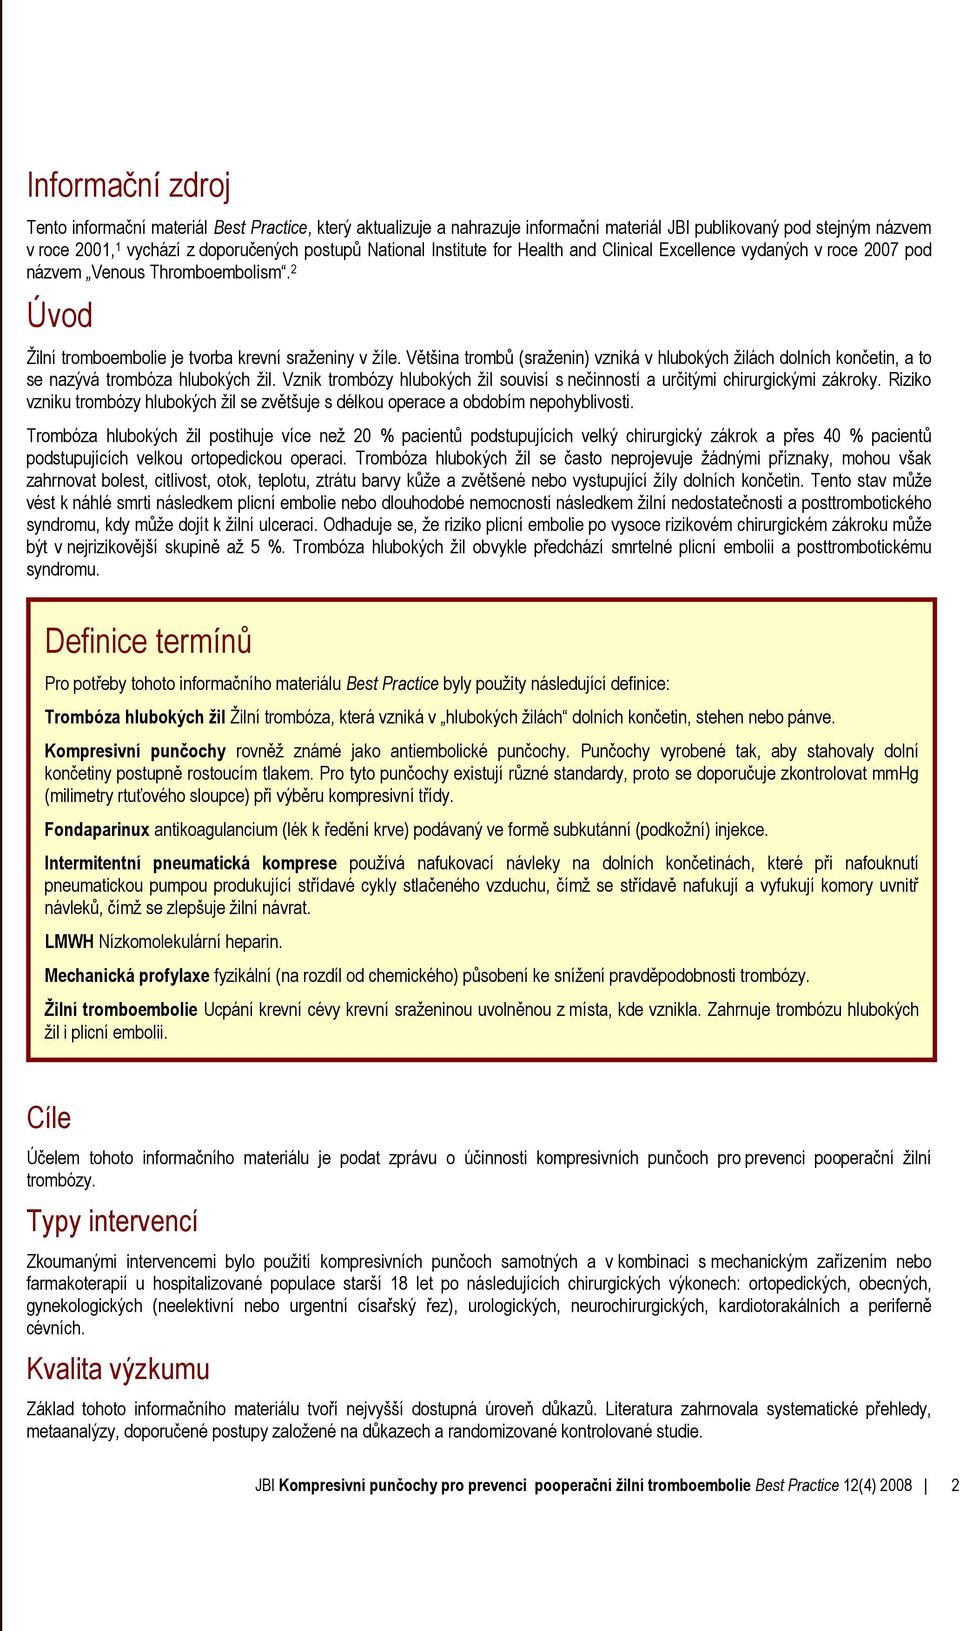 Kompresivní punčochy pro prevenci pooperační žilní tromboembolie - PDF  Stažení zdarma